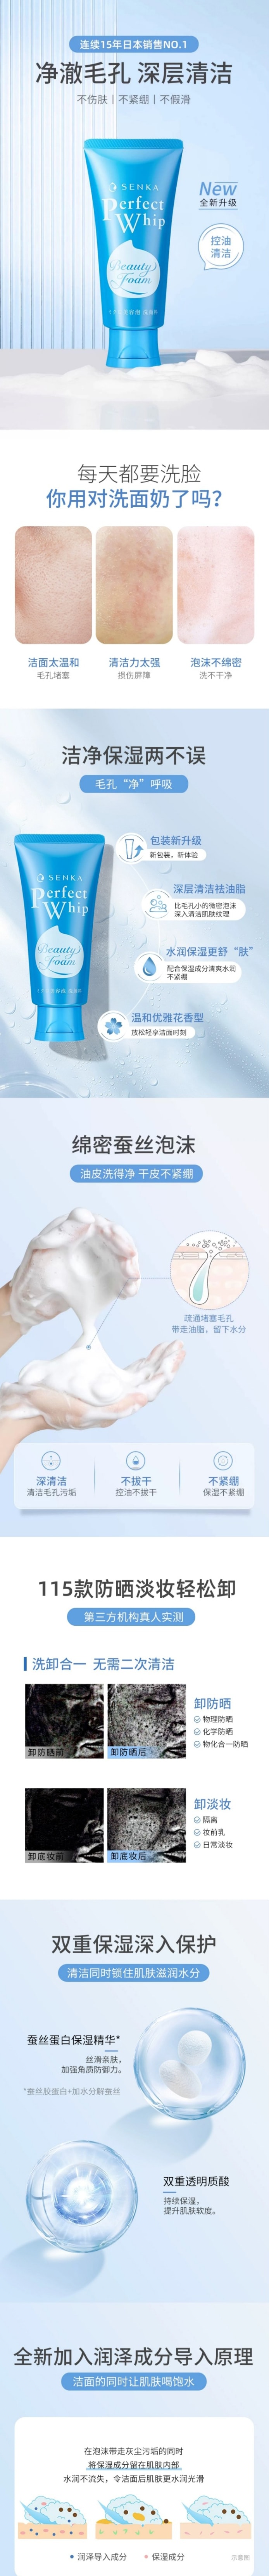 【日本直邮】SHISEIDO资生堂 SENKA 洗颜专科 超微米浓密泡沫洗卸两用洁面乳  120g